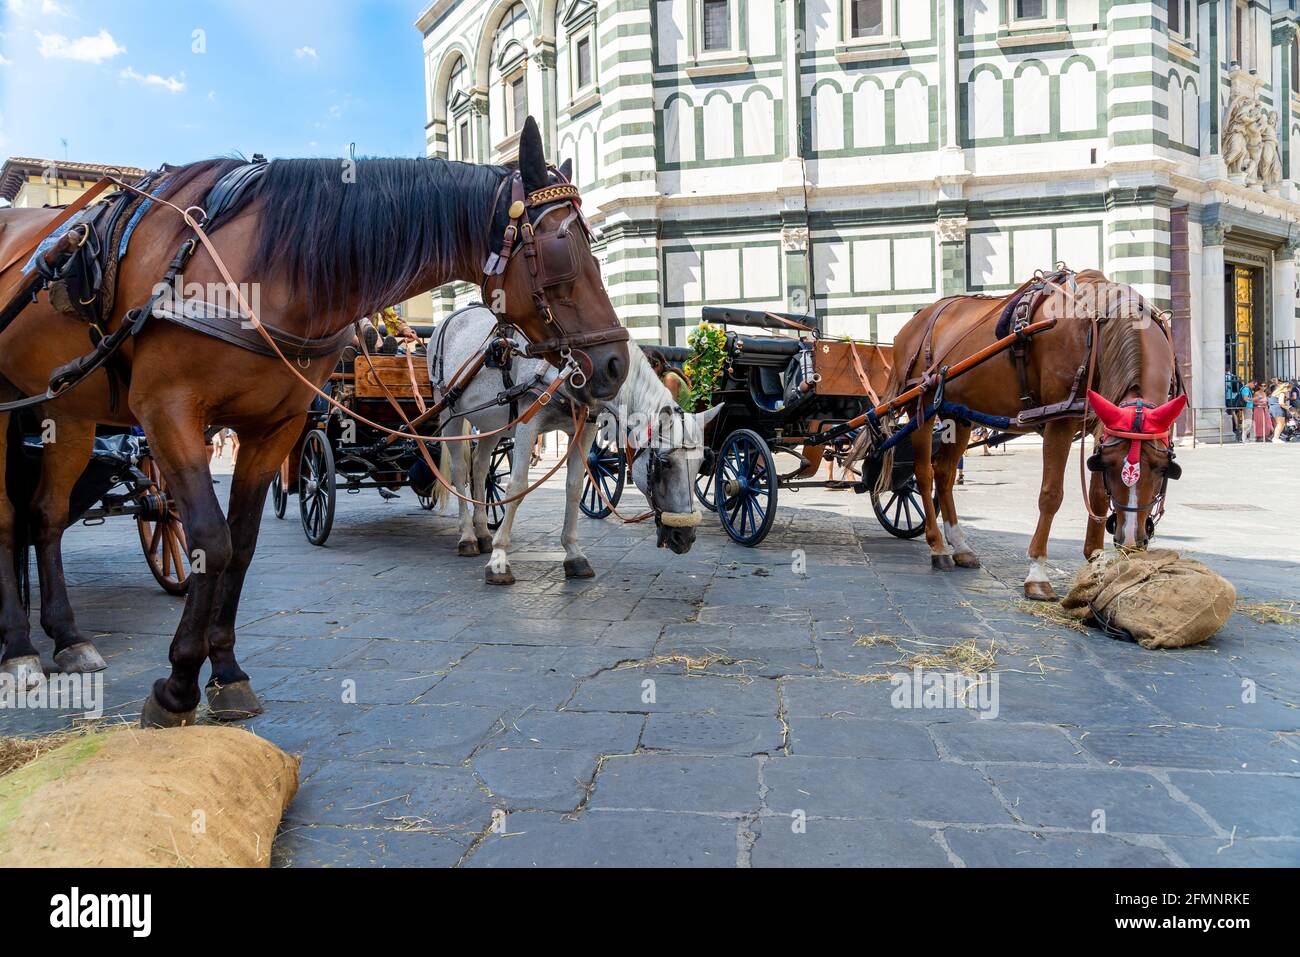 FLORENZ, ITALIEN - 24. Aug 2020: Florenz, Toscana/Italien - 24.08.2020: Drei hackney-Wagen, in Warteposition, mit Pferden, die teilweise straig fressen Stockfoto